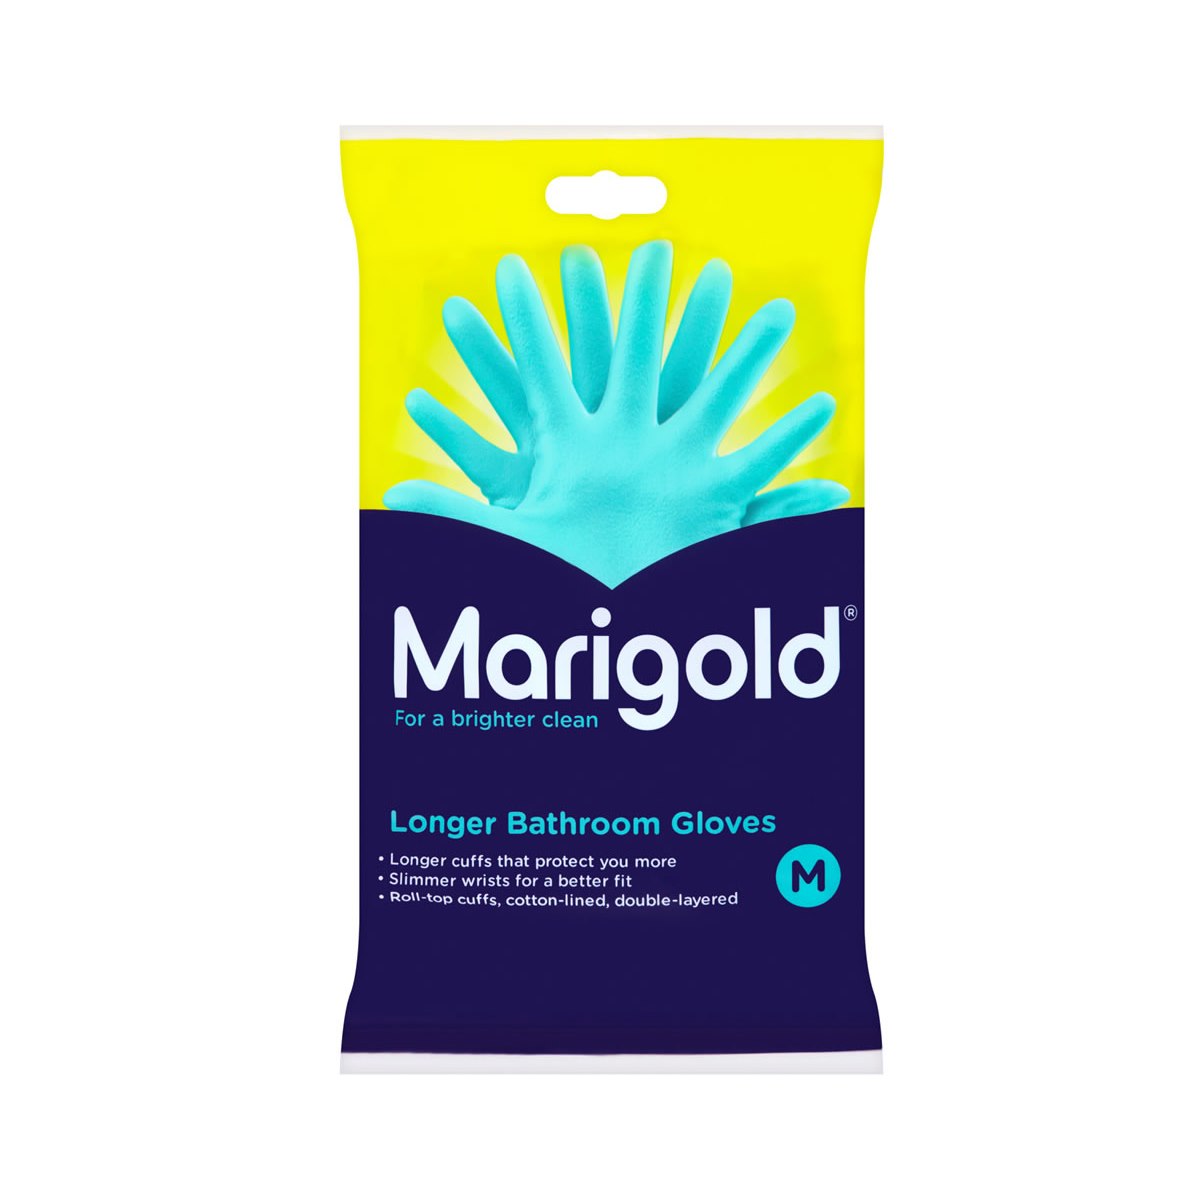 Marigold Longer Bathroom Gloves Medium